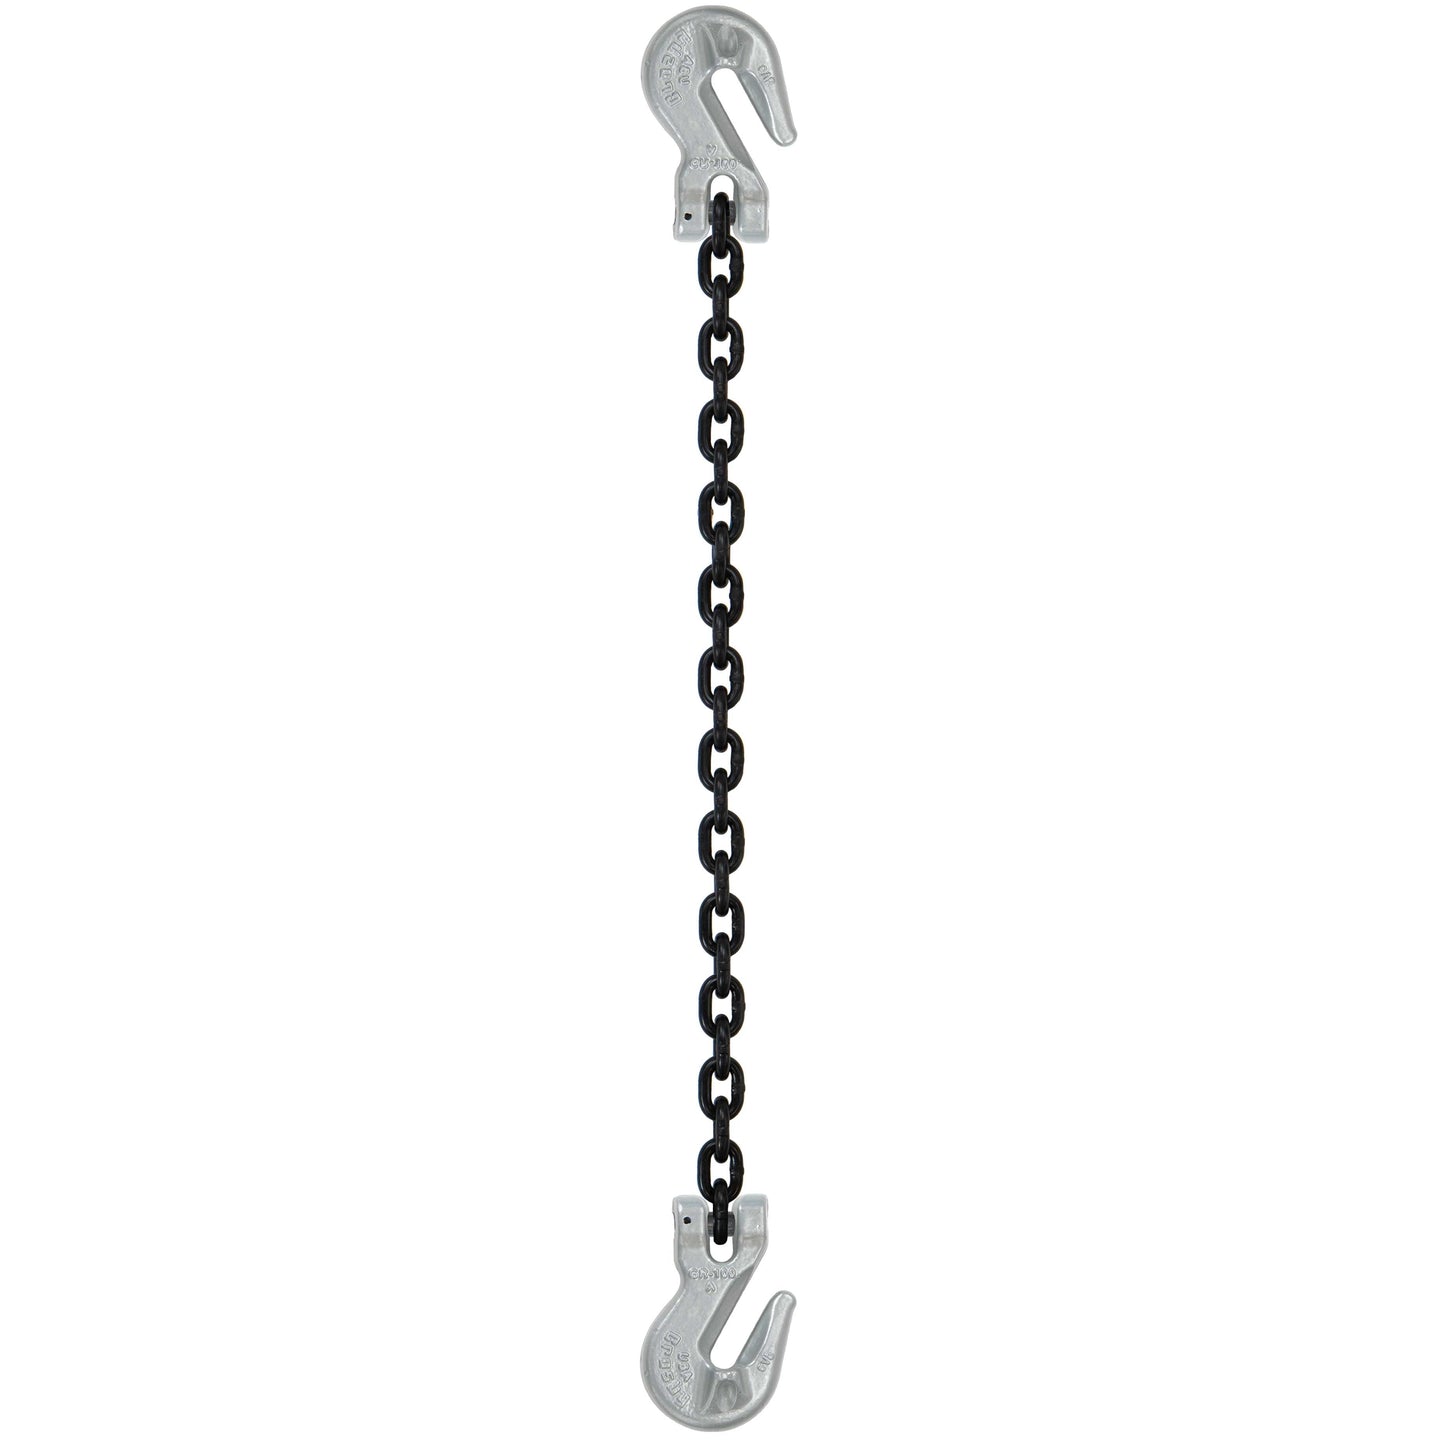 12 inch x 20 foot Domestic Single Leg Chain Sling w Crosby Grab & Grab Hooks Grade 100 image 1 of 2